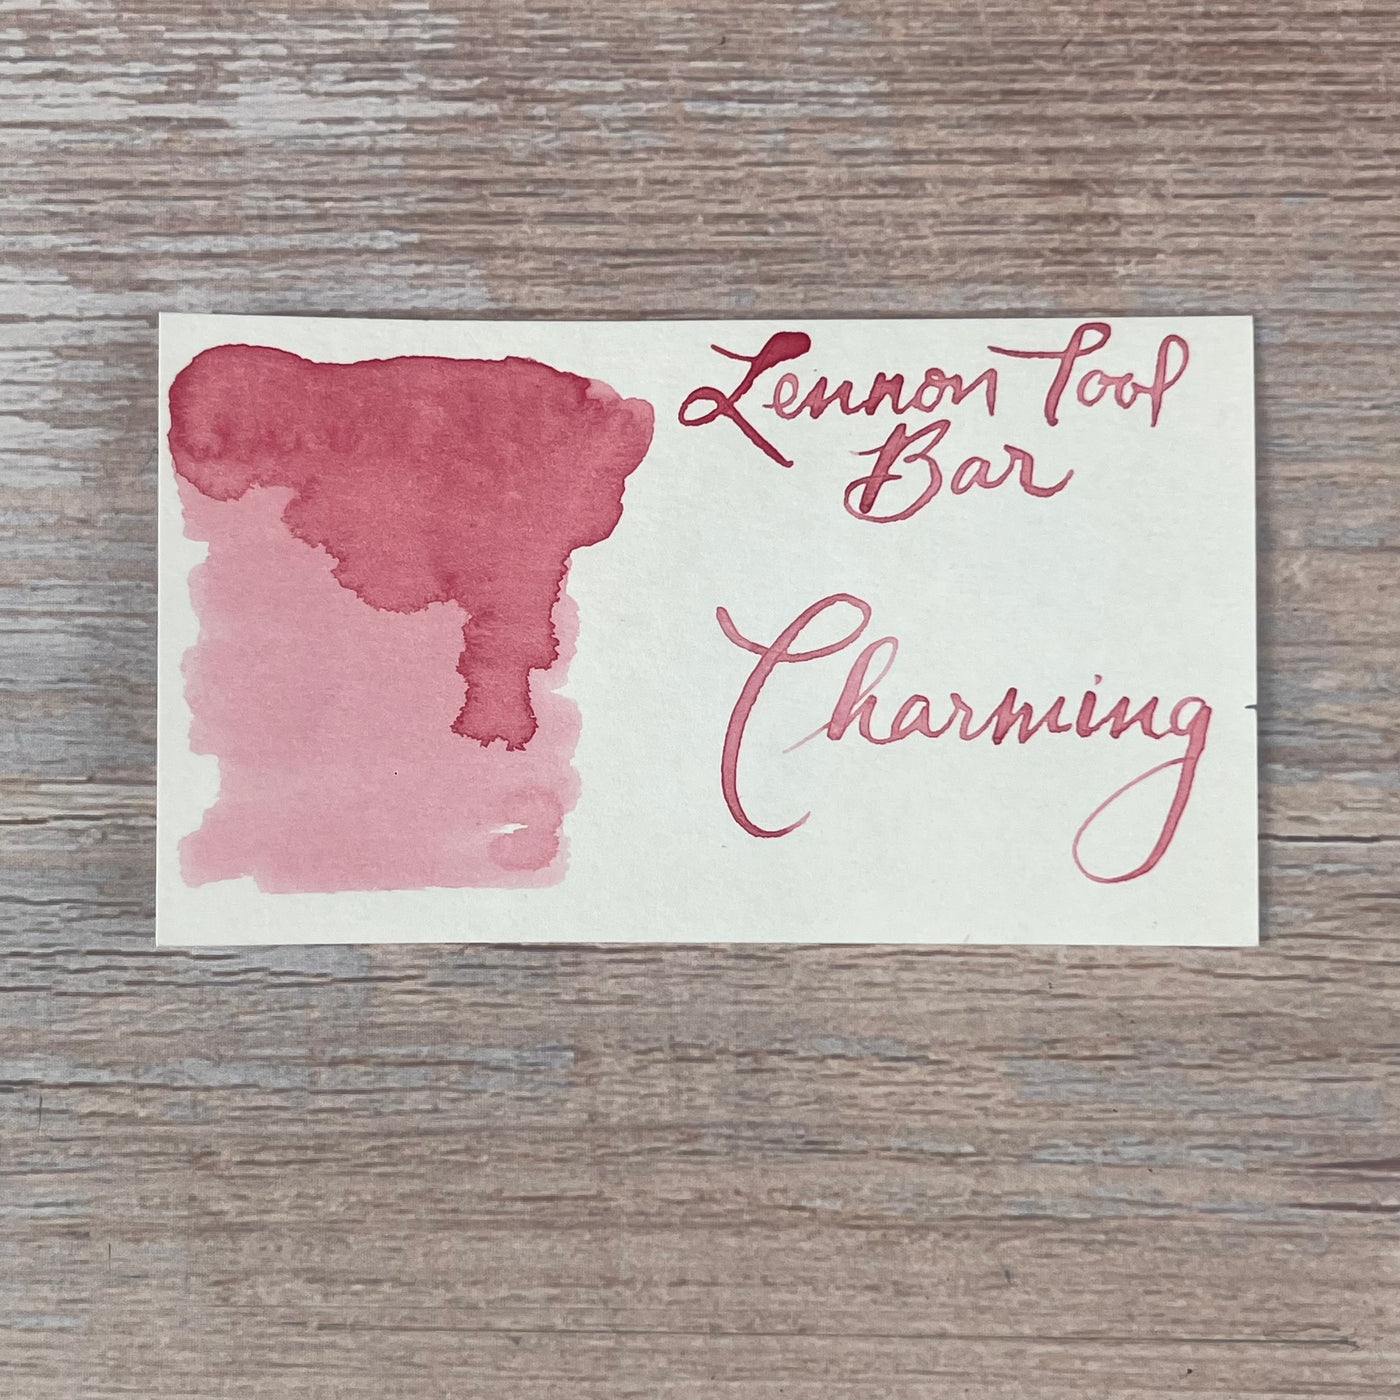 Lennon Tool Bar Charming - 30ml Bottled Ink